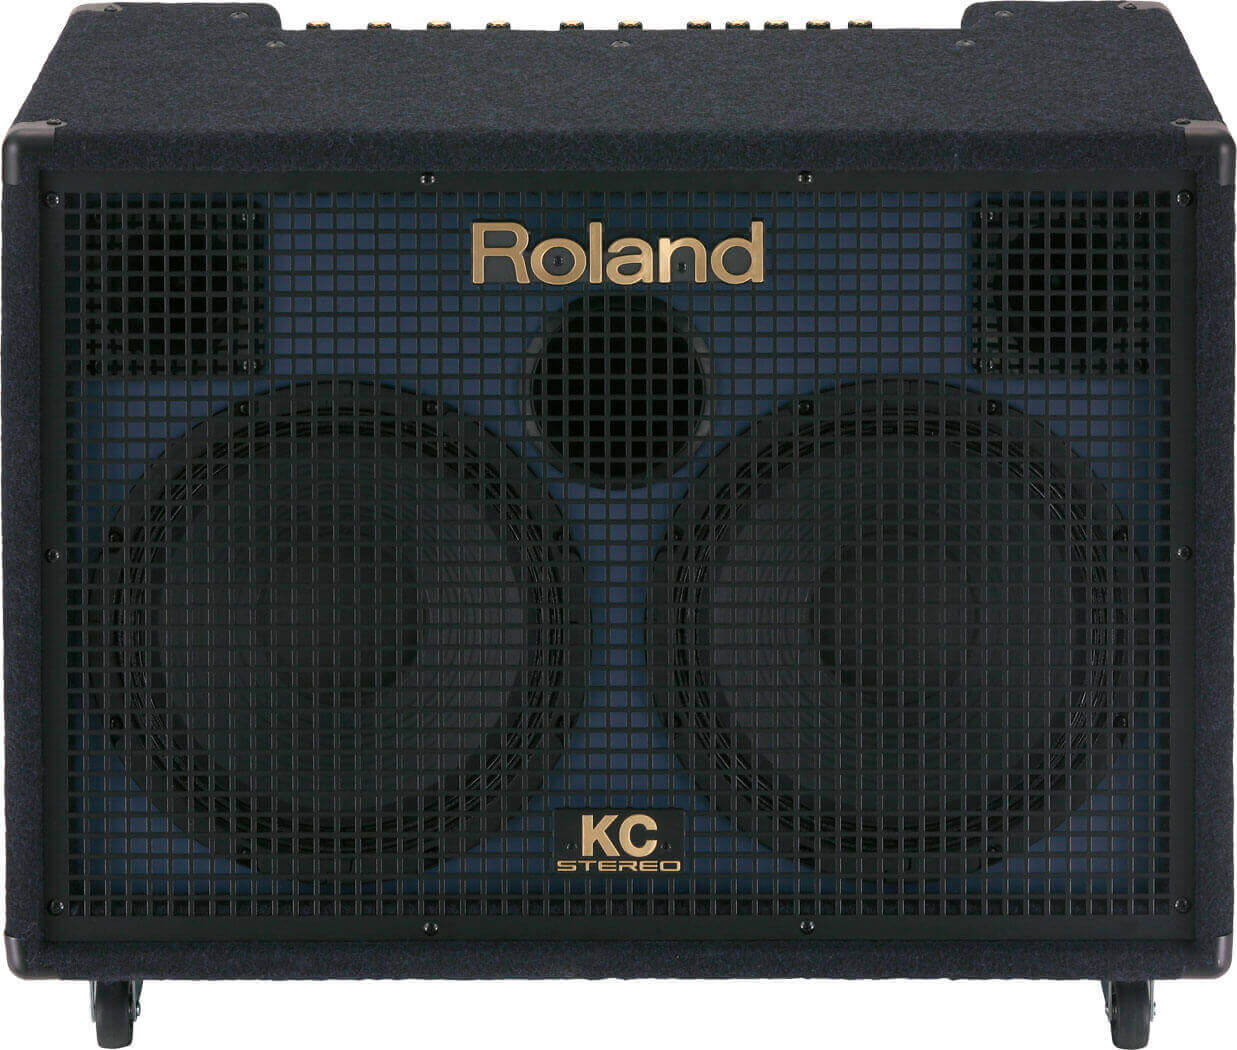 罗兰 Roland KC-880 键盘音箱